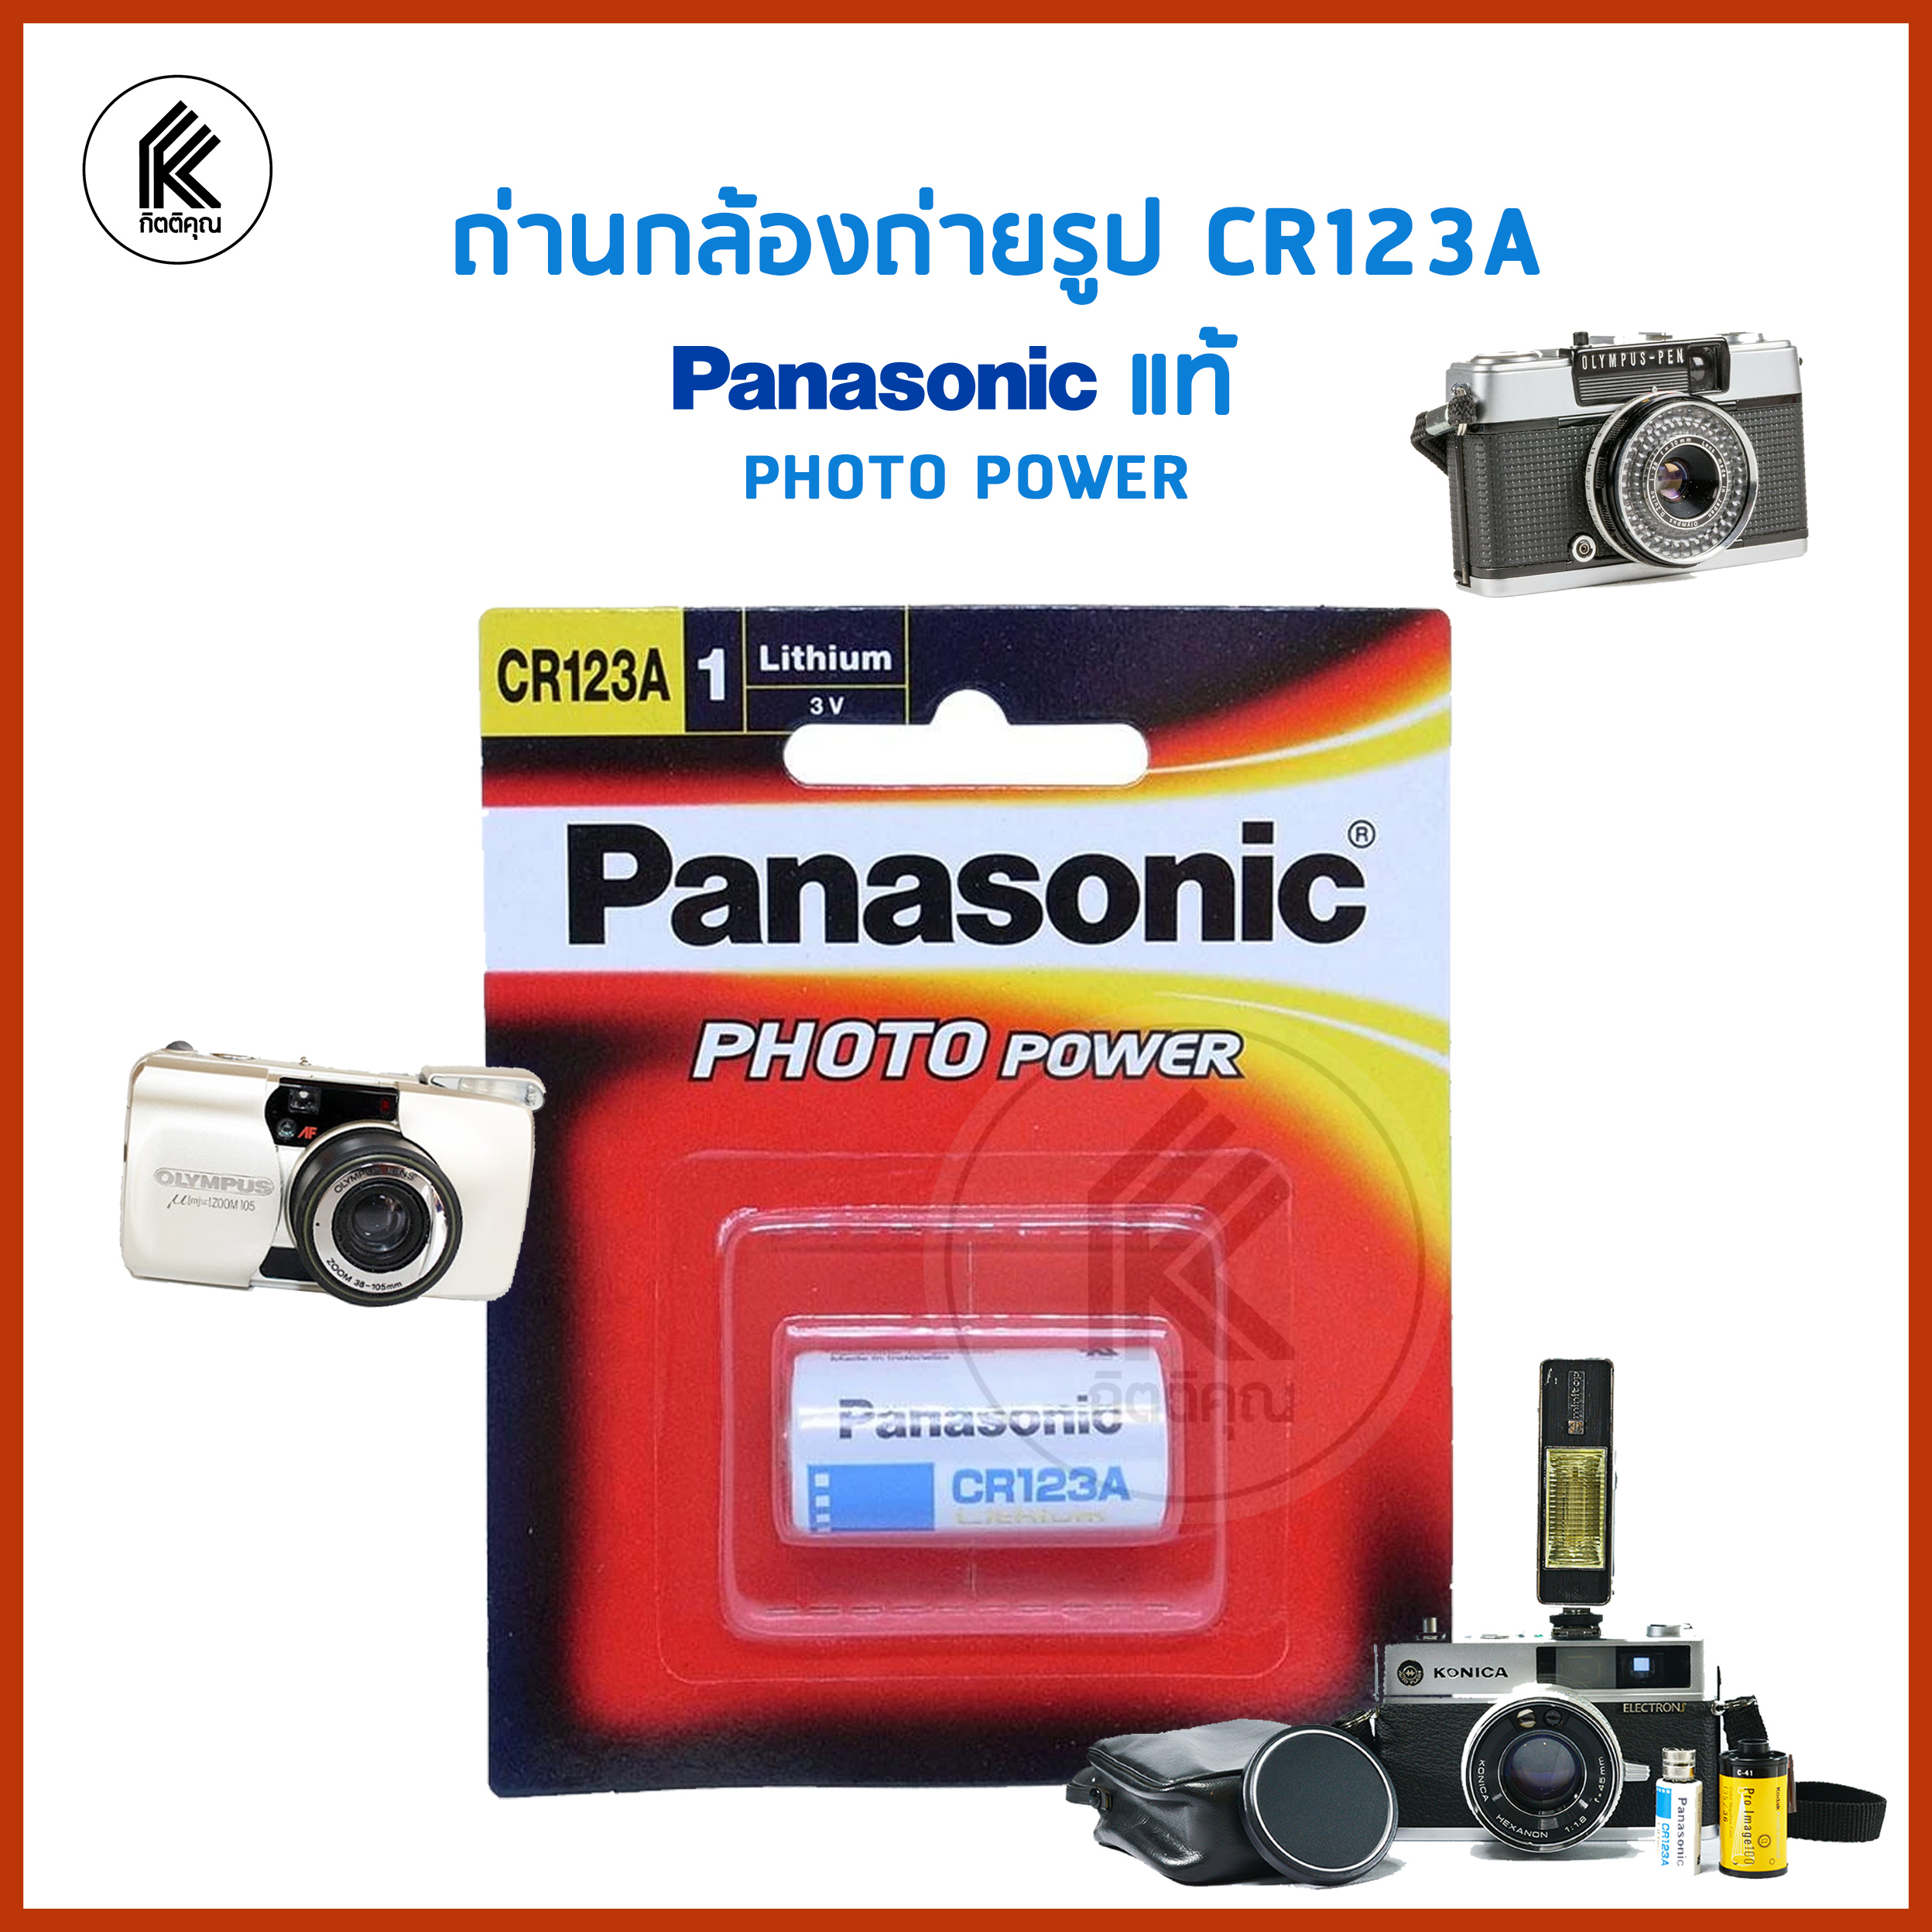 ถ่านกล้องถ่ายรูป ถ่านกล้องฟิลม์ CR123A Panasonic ของแท้ CR-123A/1BNL ถ่าน แบต พานาโซนิค 1 ก้อน ถ่านลิเธียม ถ่านกล้อง กล้องฟิลม์ CR 123A camera battery PHOTO POWER